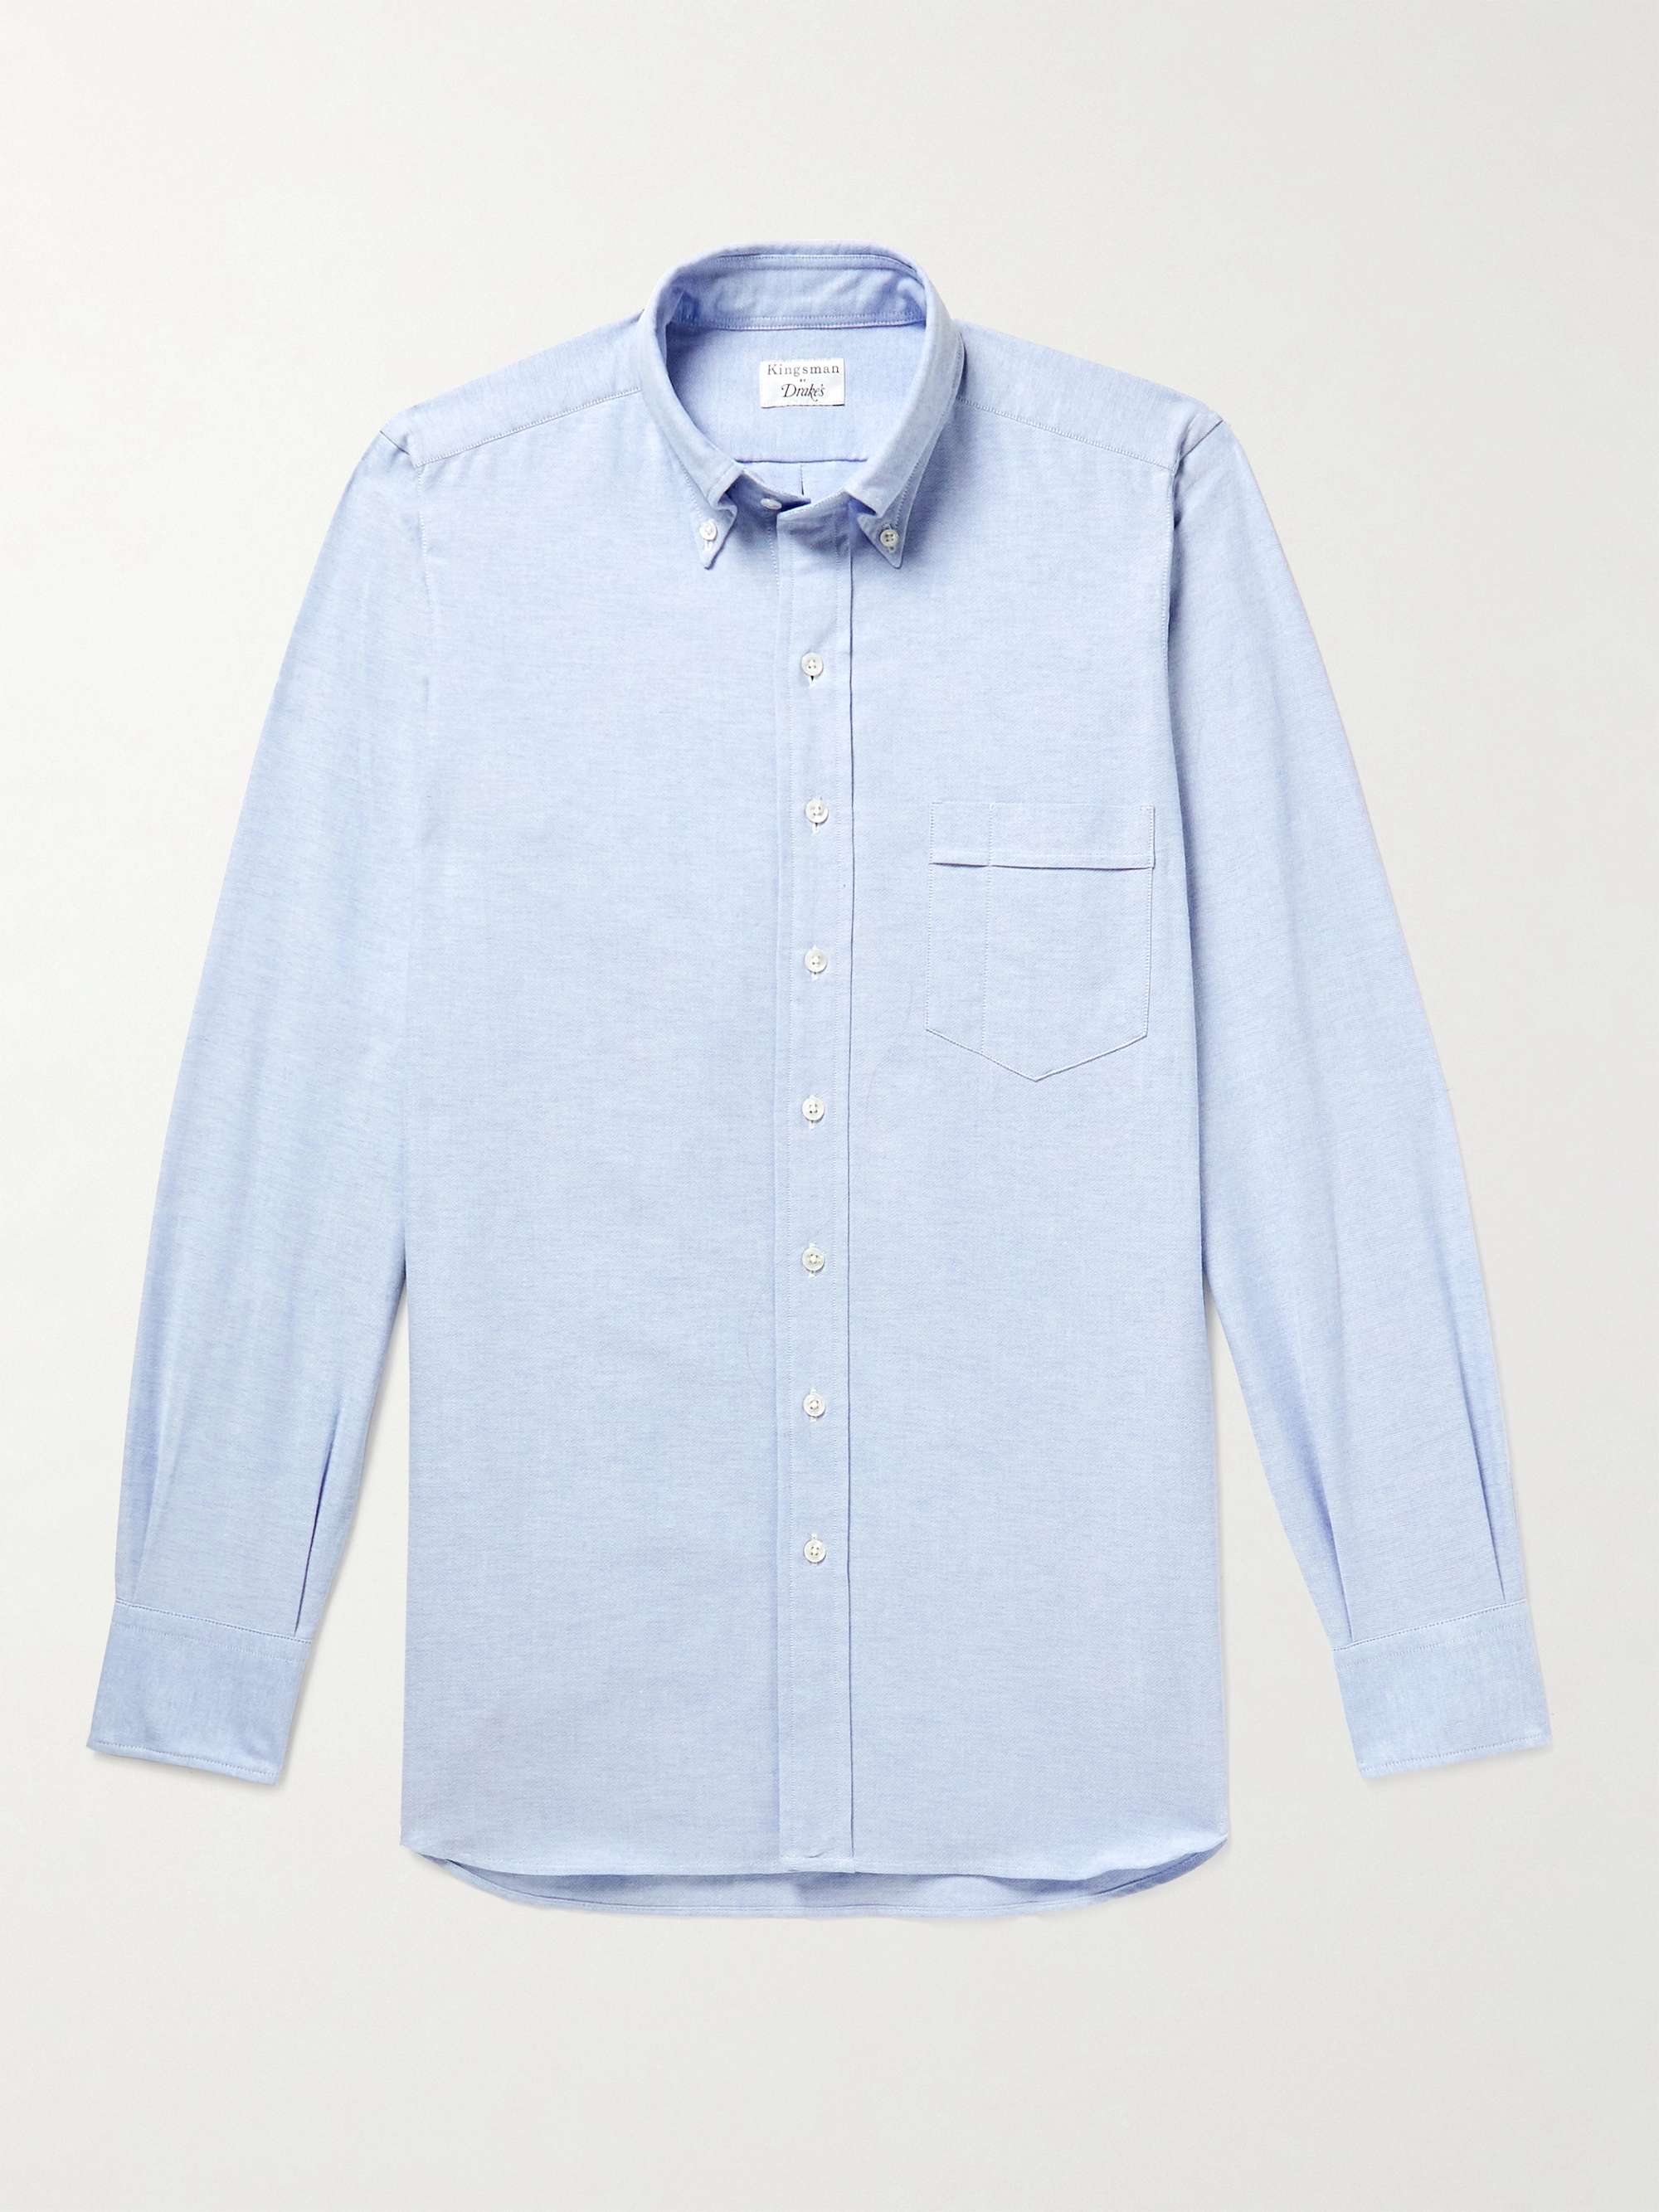 KINGSMAN + Drake's Button-Down Collar Cotton Oxford Shirt